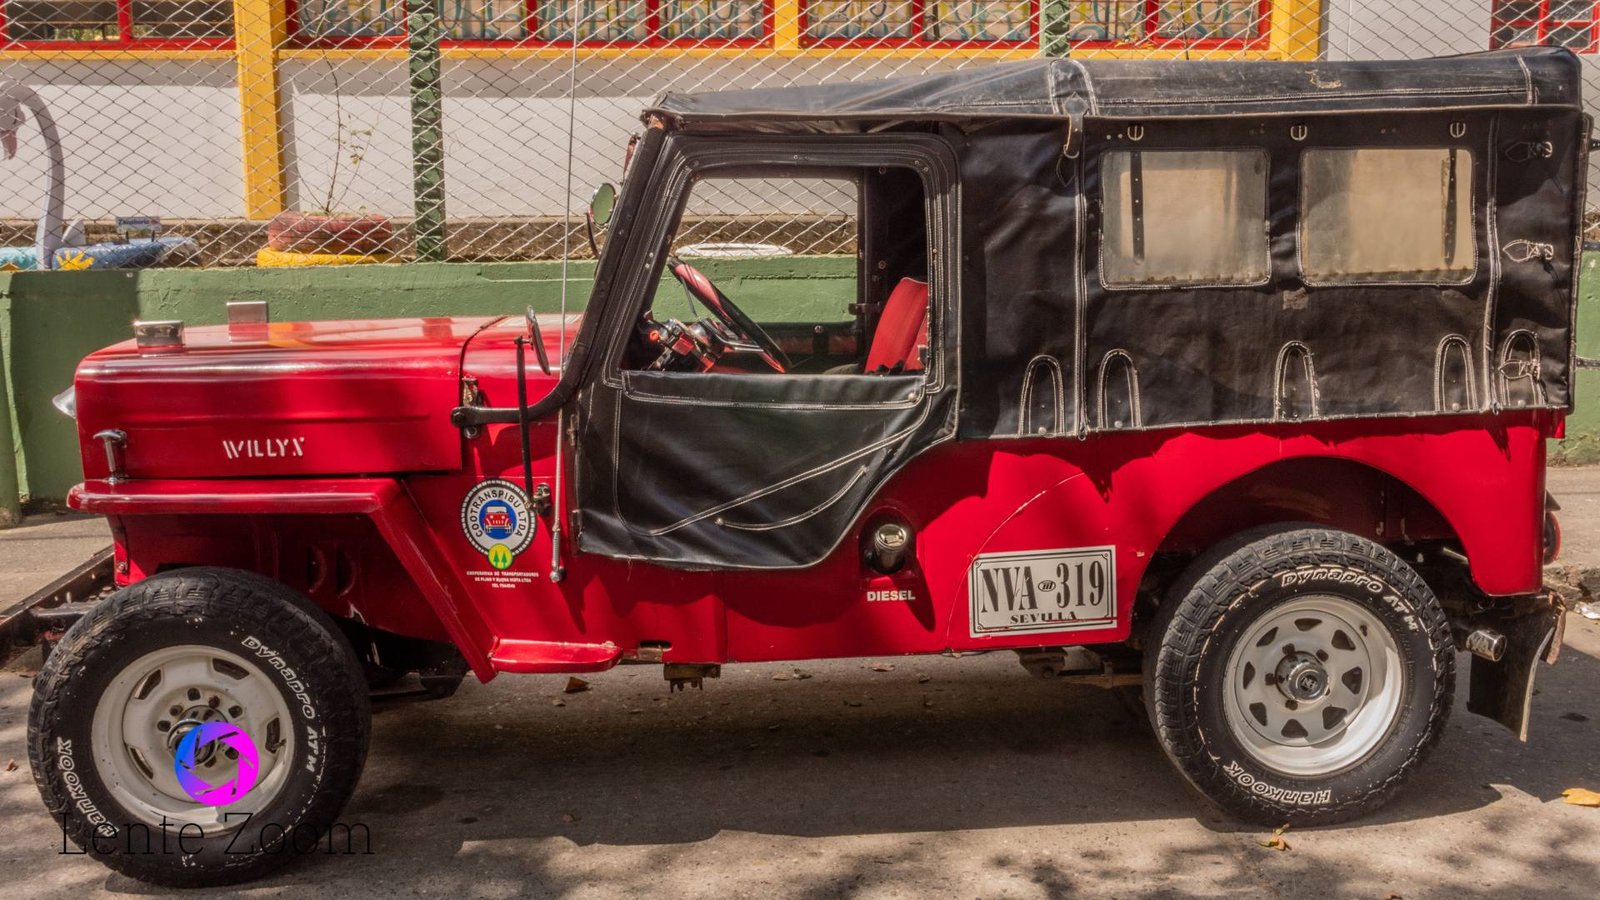 Un jeep parqueado siendo partícipe de las Fotos de Pijao, Quindío